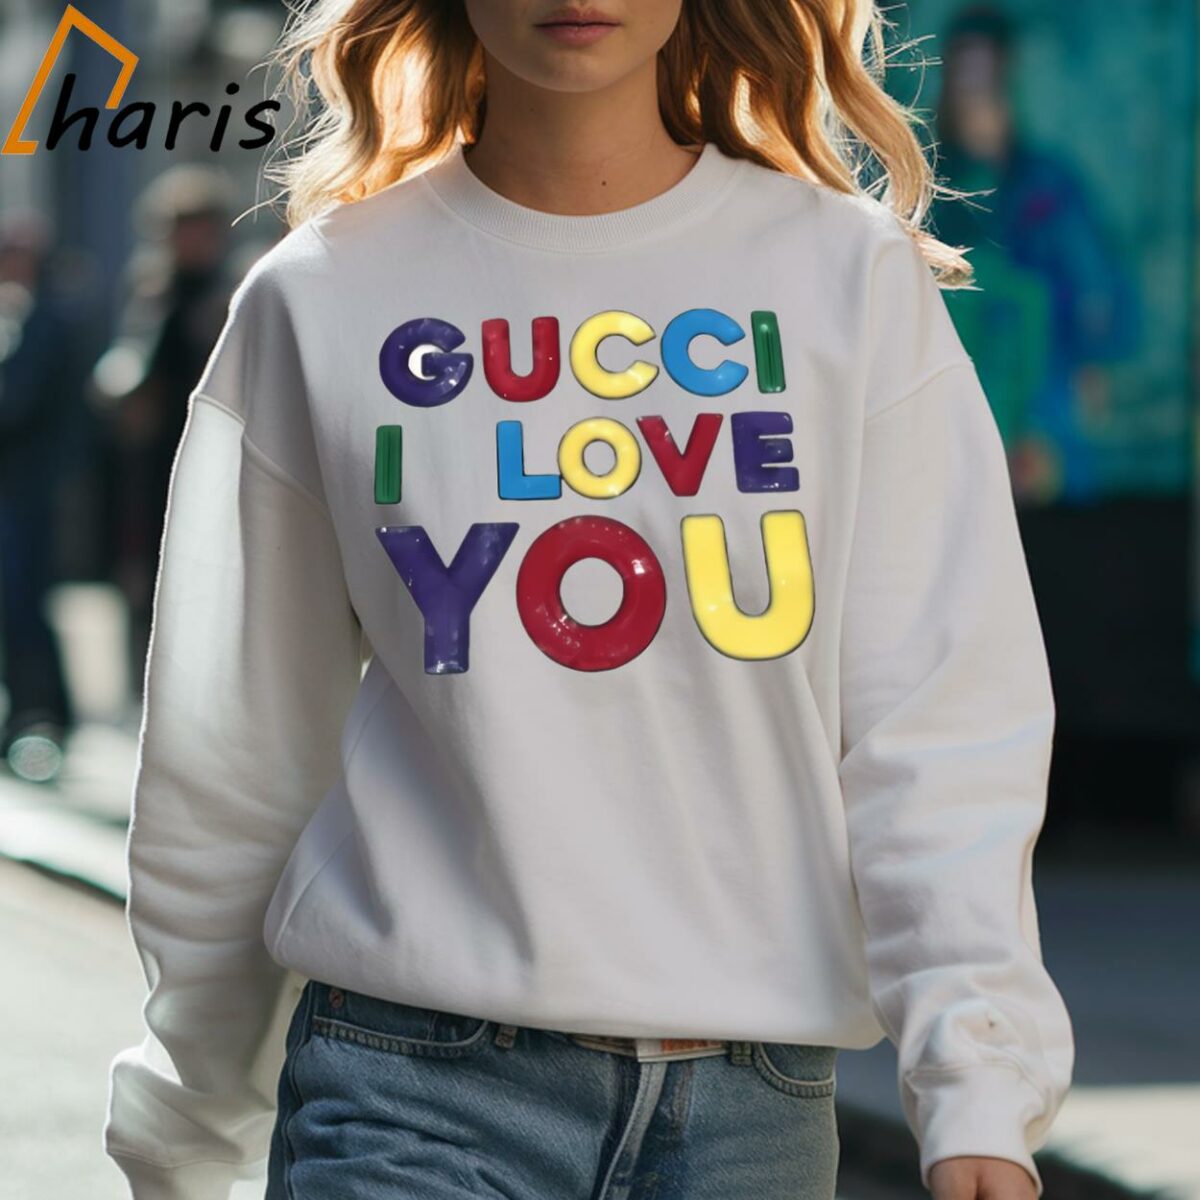 Boyer Dawn Staley Gucci I Love You Shirt 3 Sweatshirt